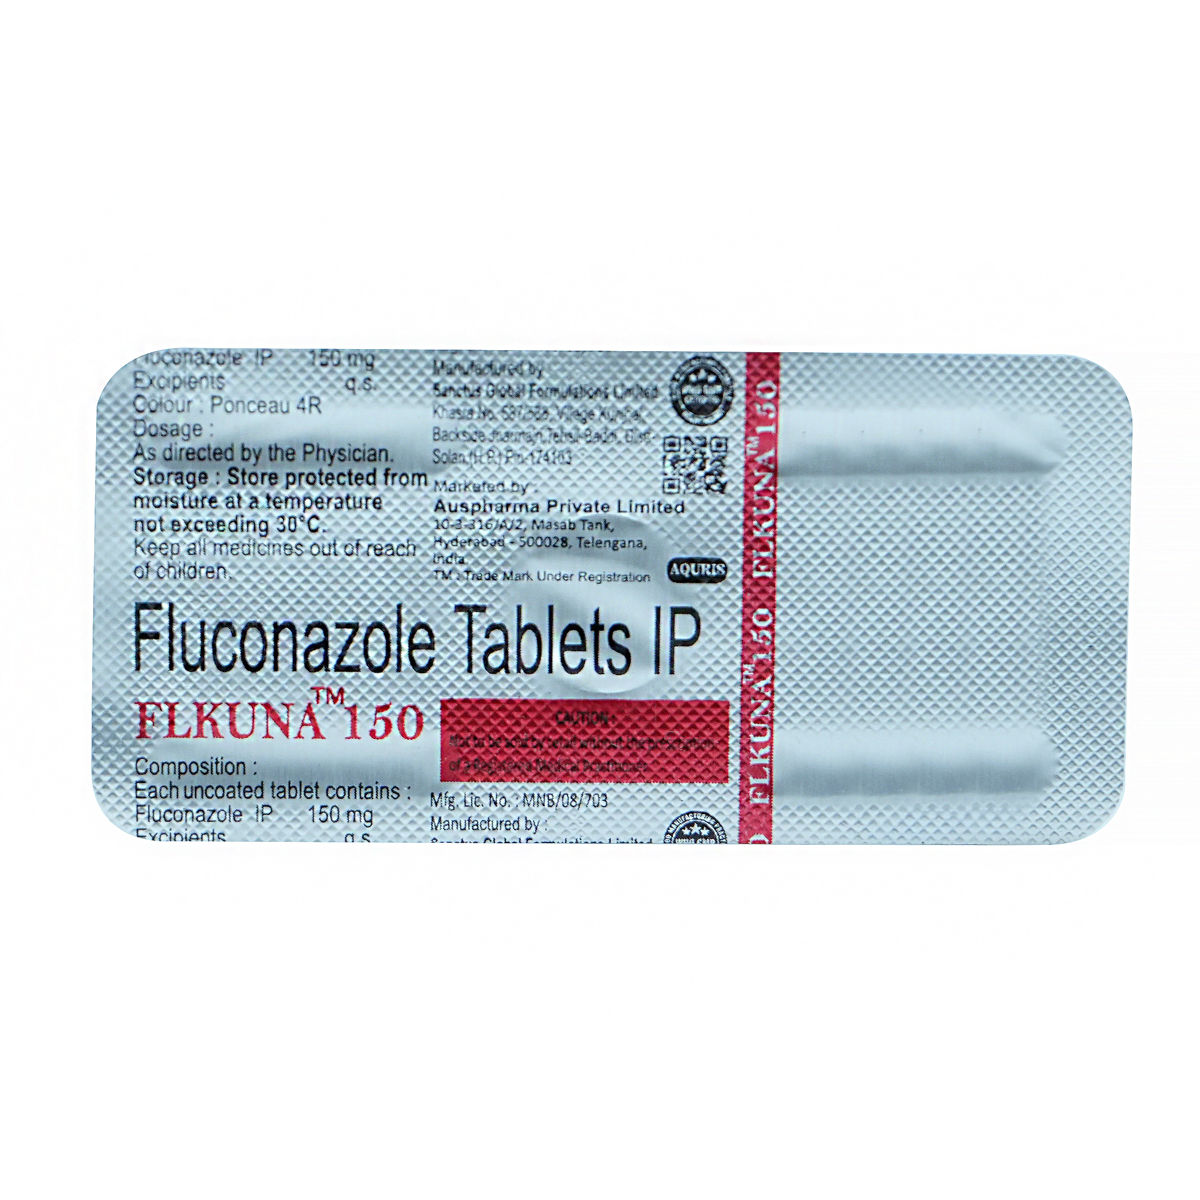 Flkuna 150 Tablet 1's, Pack of 1 Tablet